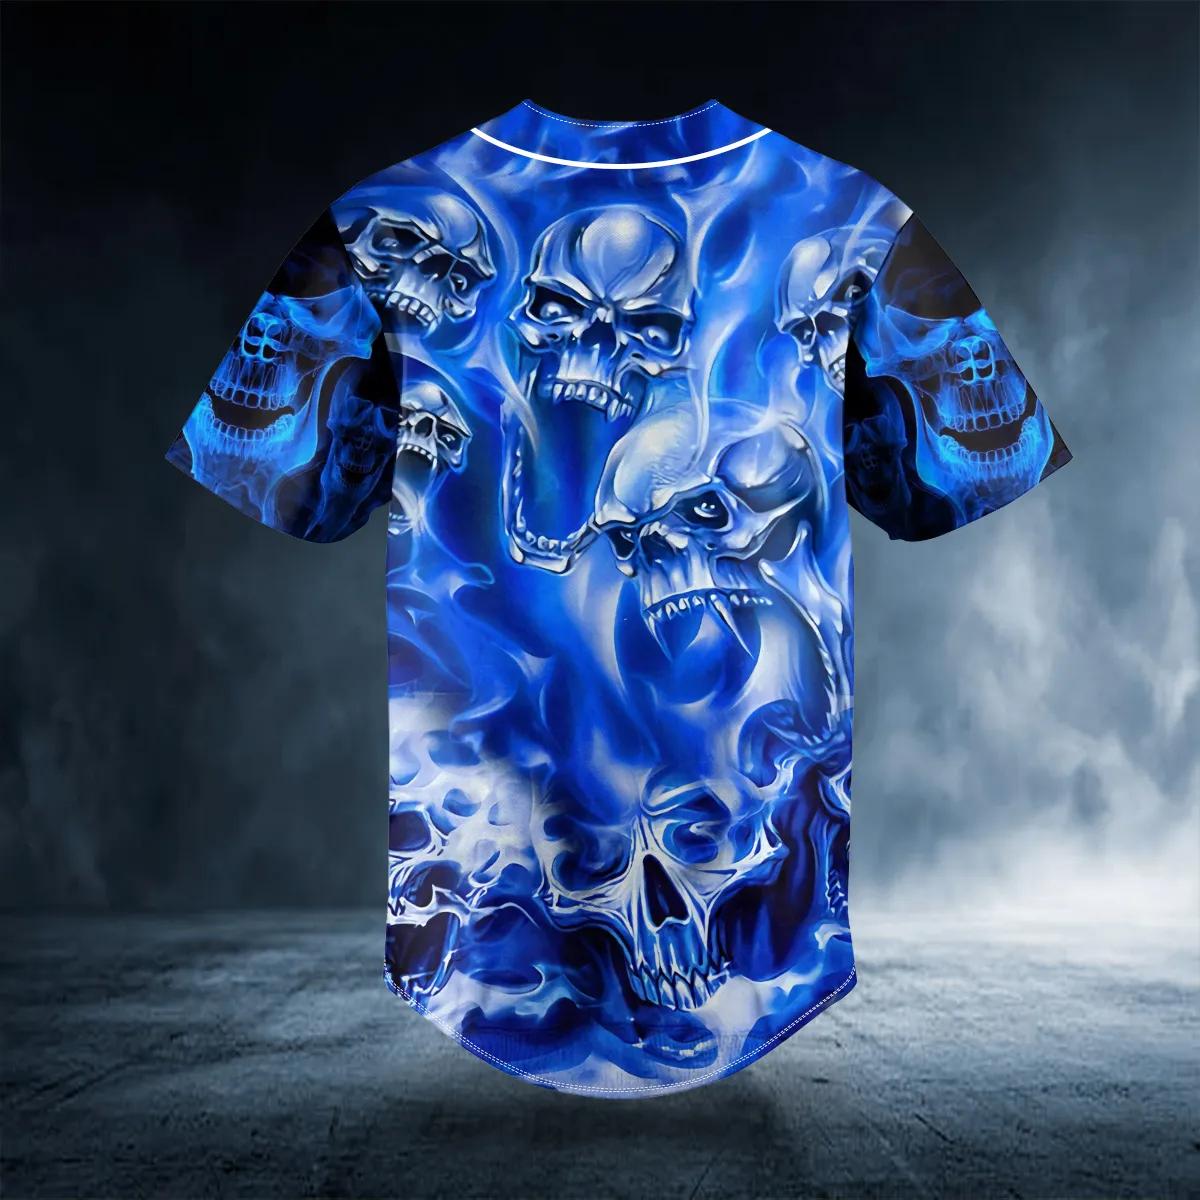 Custom Name Blue Soul Eater Ghost Skull Custom Baseball Jersey